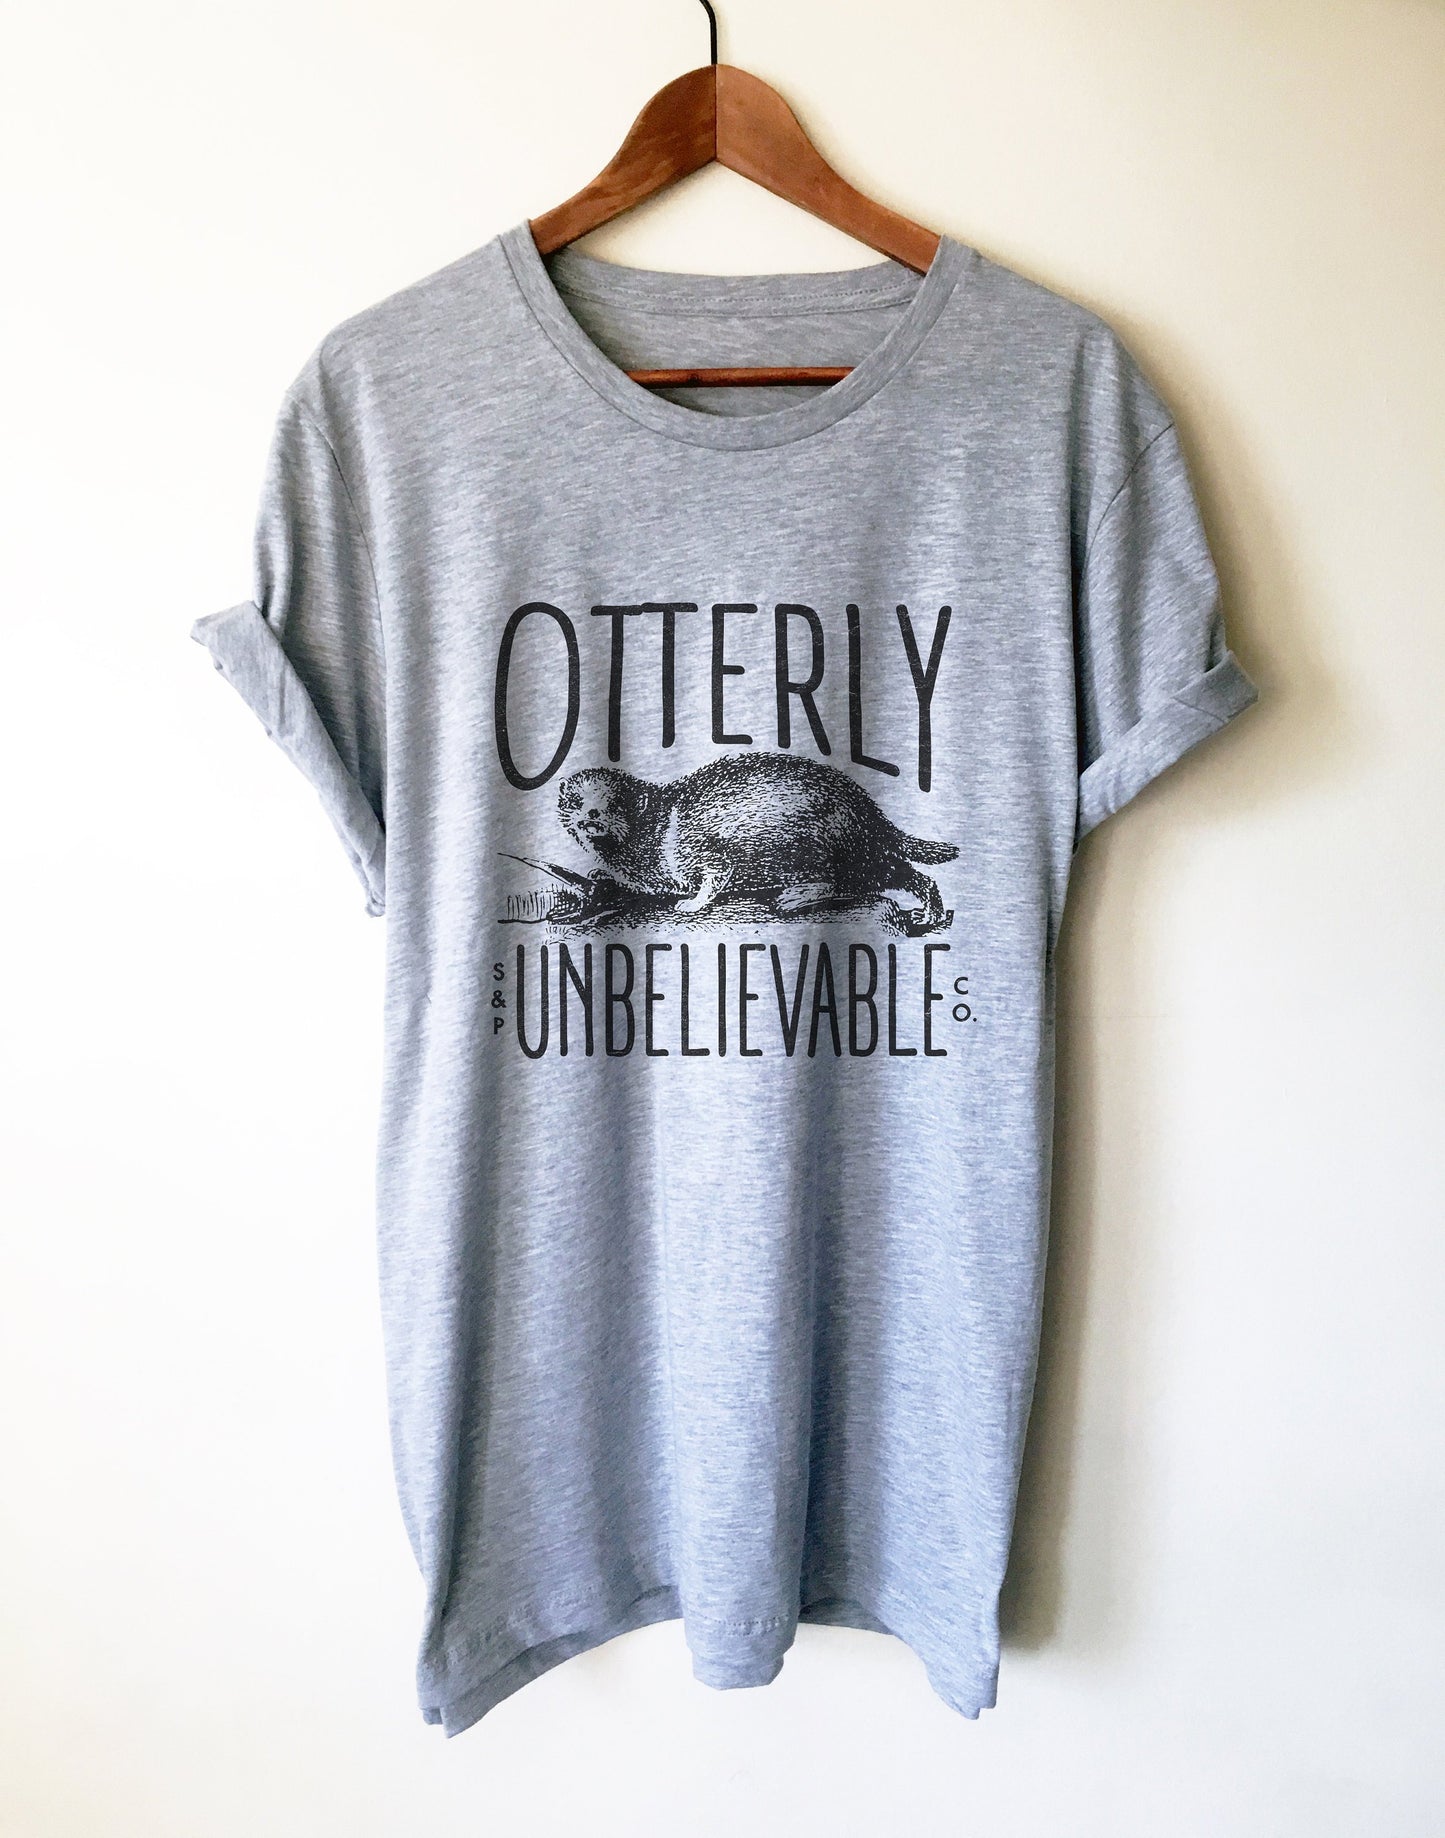 Otterly Unbelievable Unisex Shirt - Otter Shirt, Otter Gift, Sea Otter Shirt, Significant Otter, Cute Otter Shirt, Love Each Otter